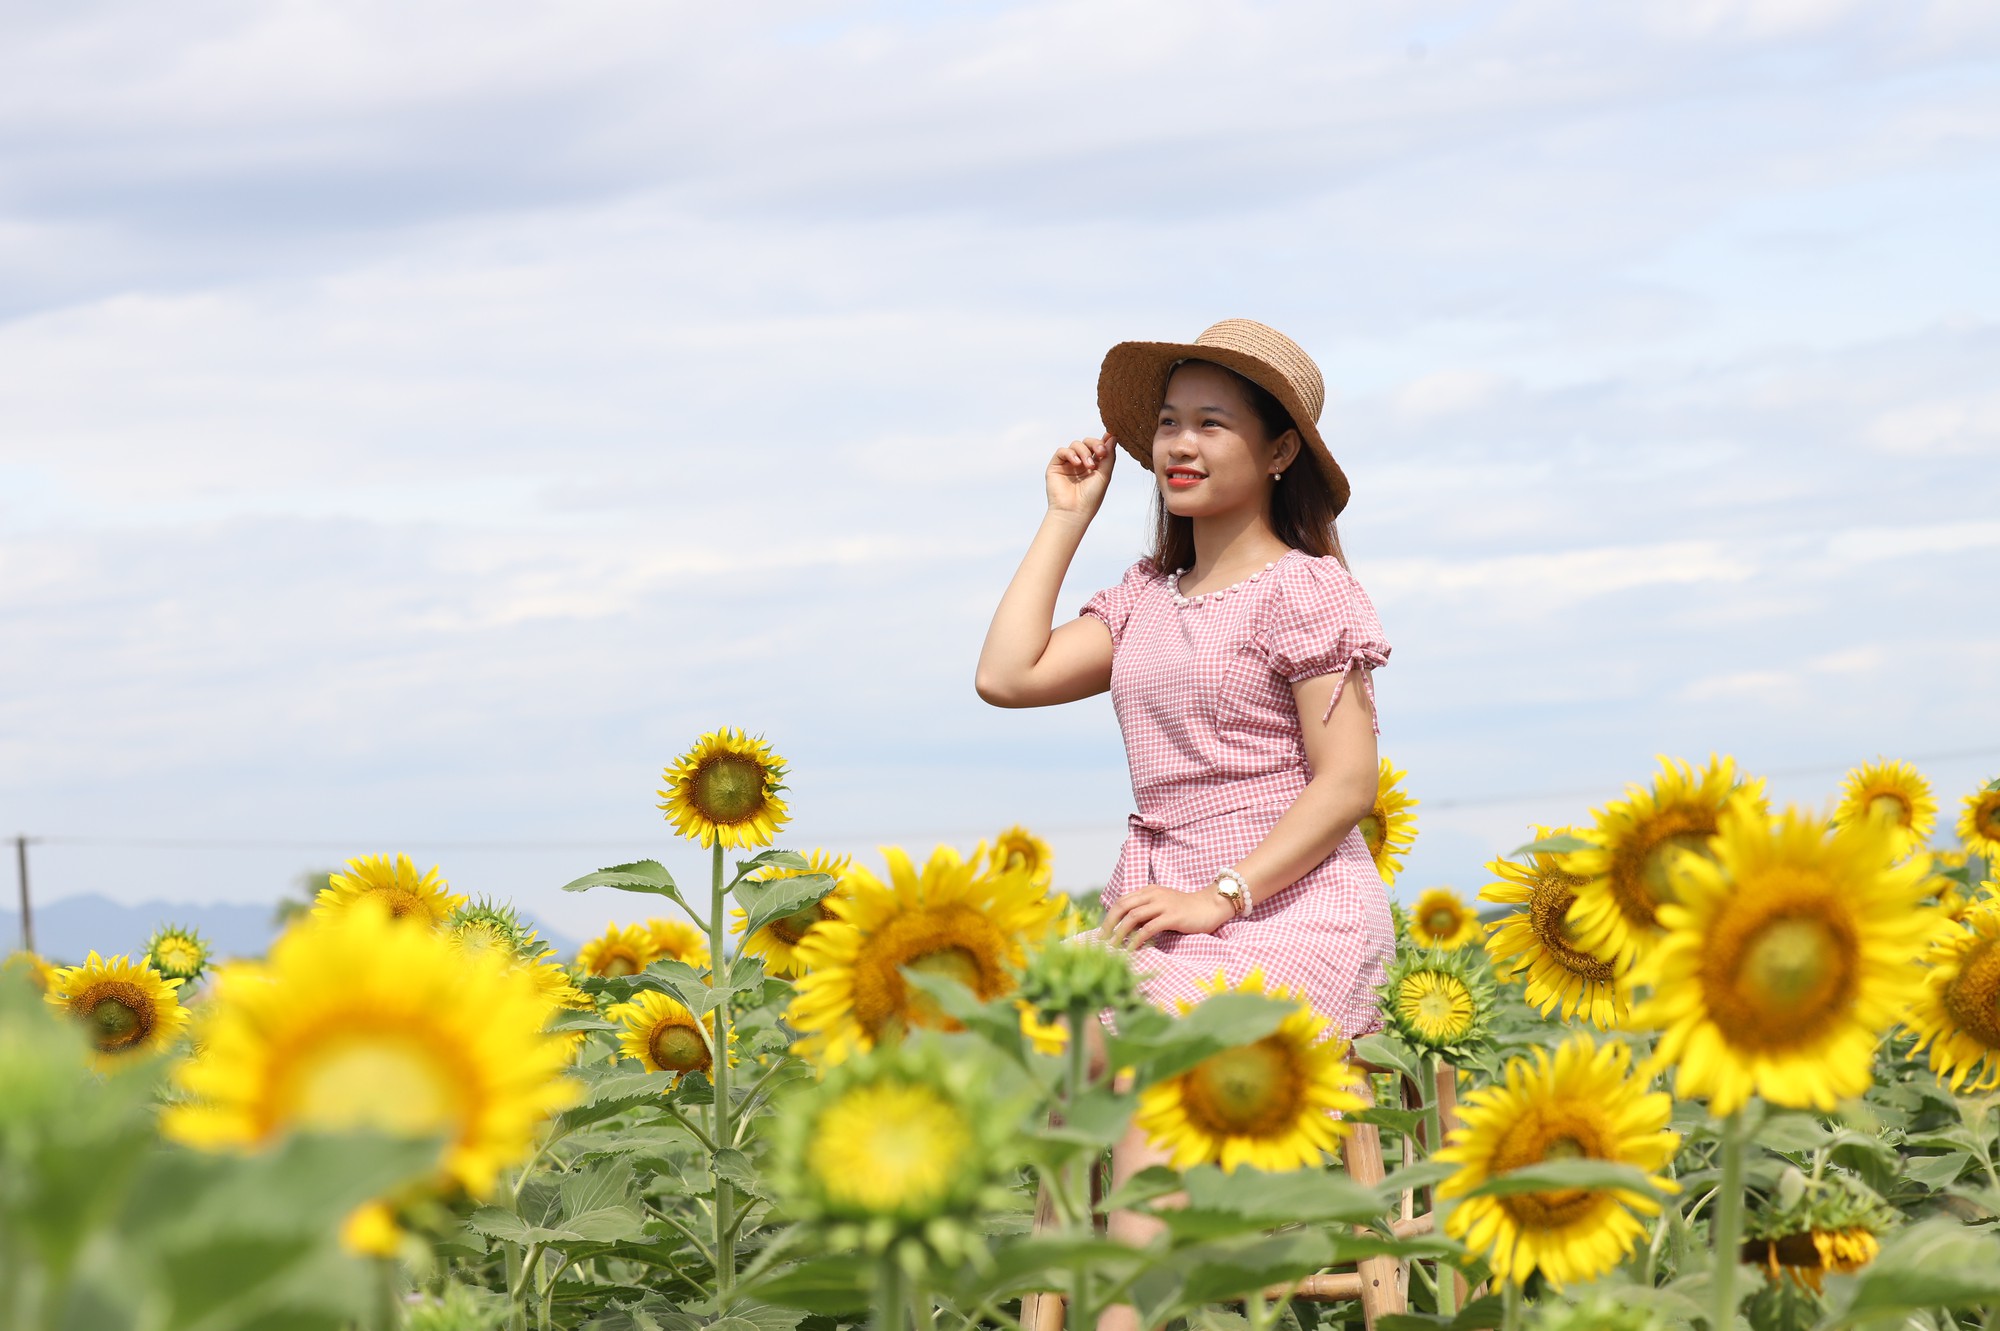 Phát sốt với vườn hoa hướng dương mới xuất hiện ở Quảng Nam - Ảnh 1.